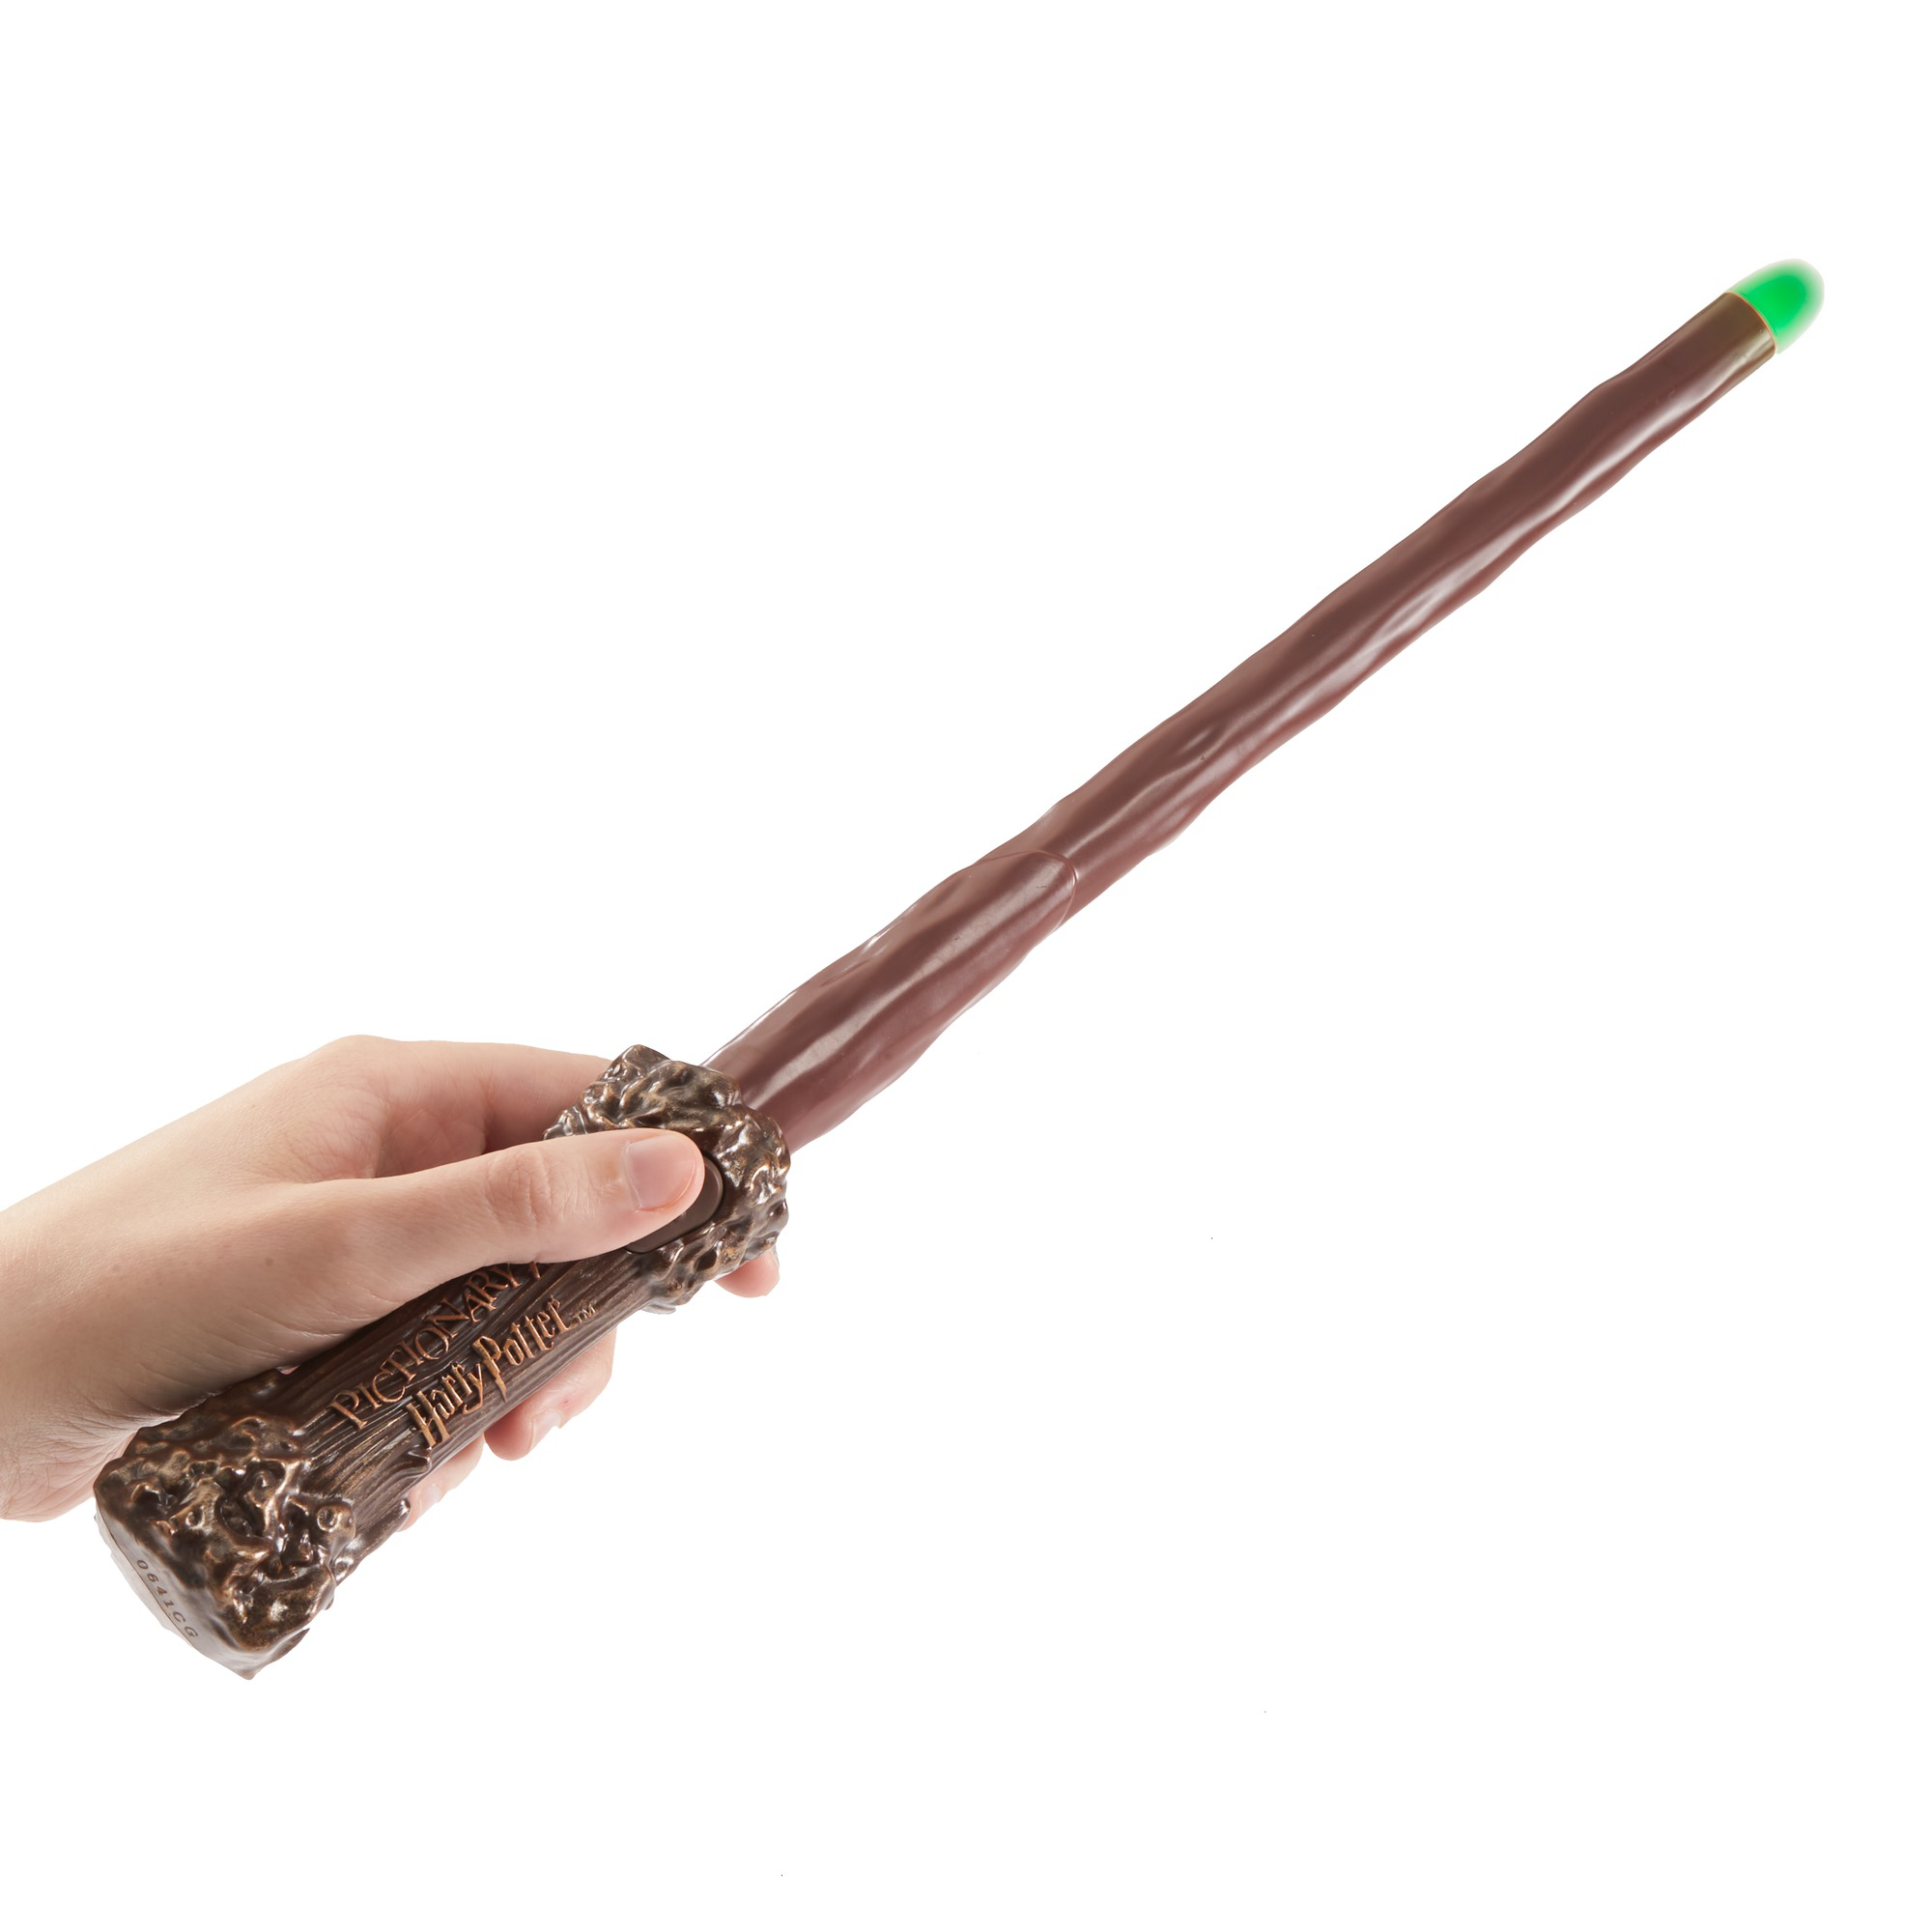 Penna a forma di bacchetta magica Harry Potter™